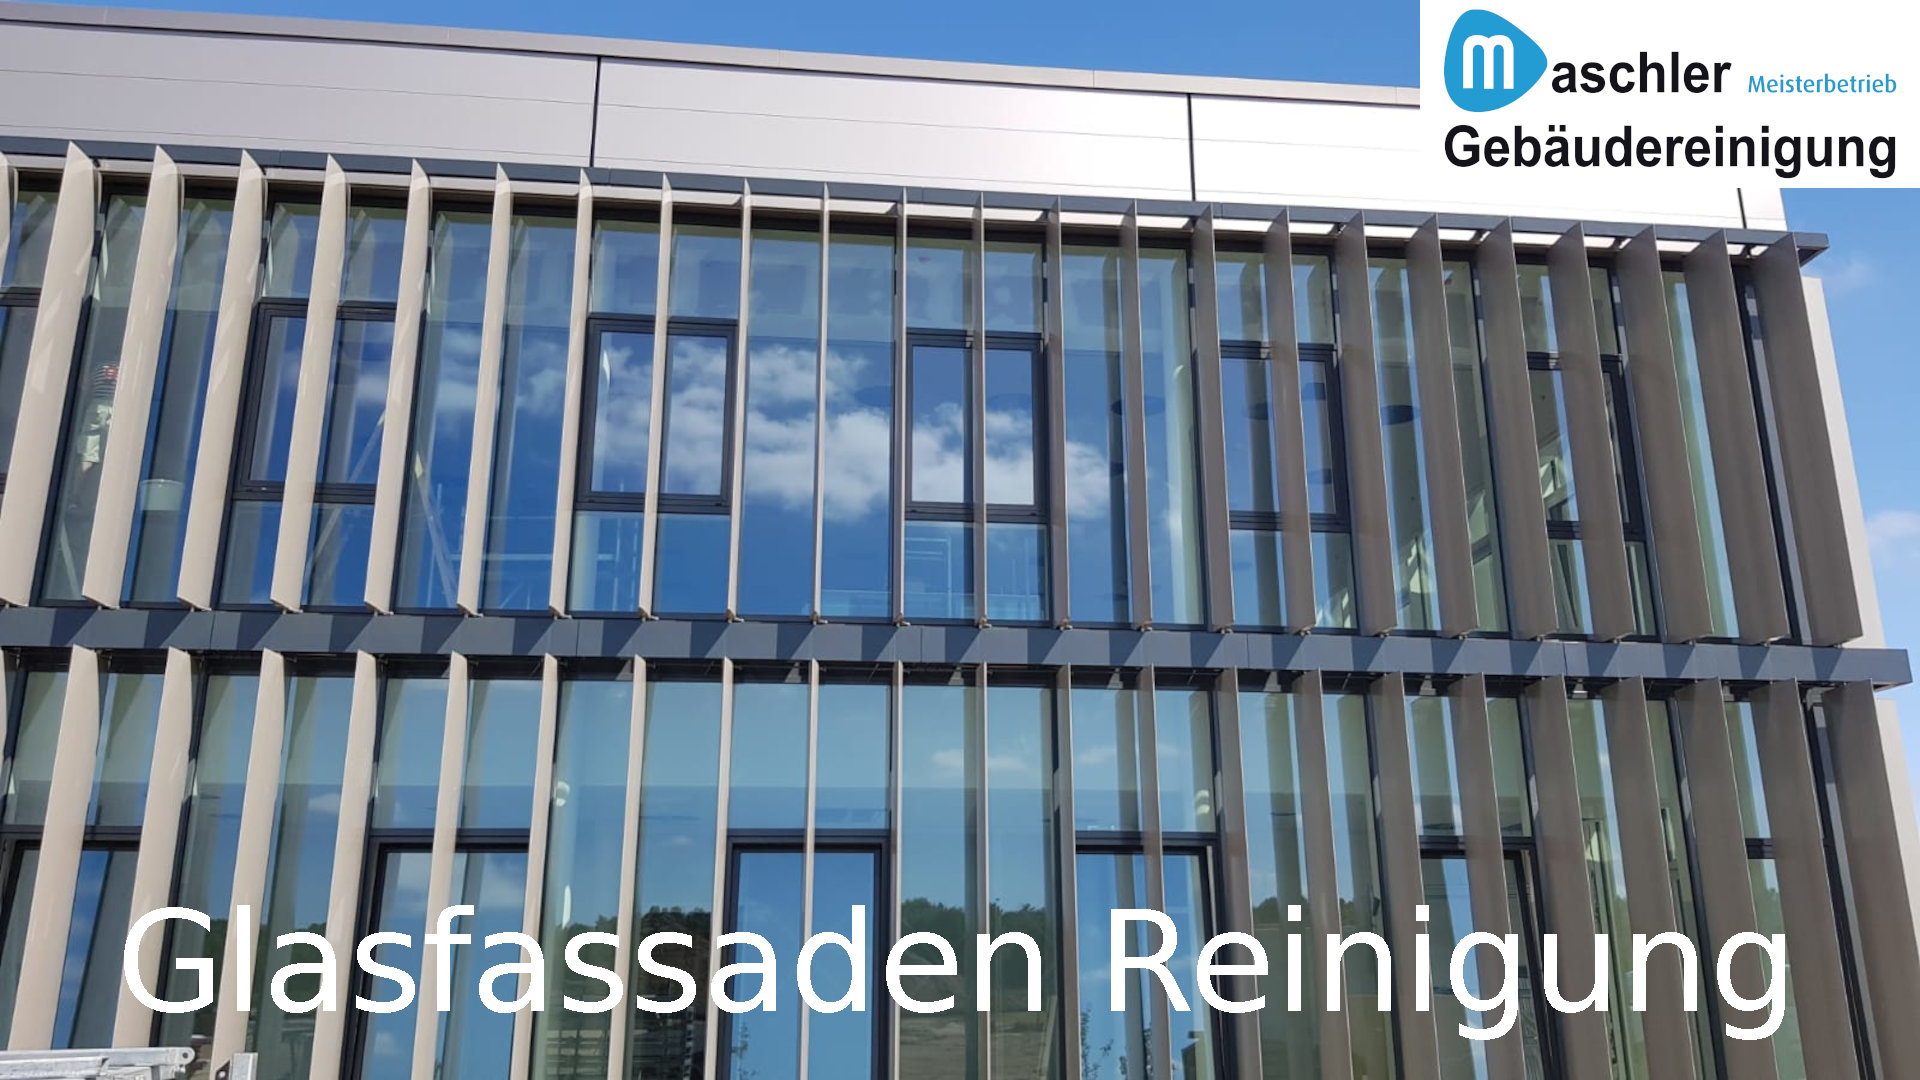 Glasfassadenreinigung - Gebäudereinigung Maschler Schwerin